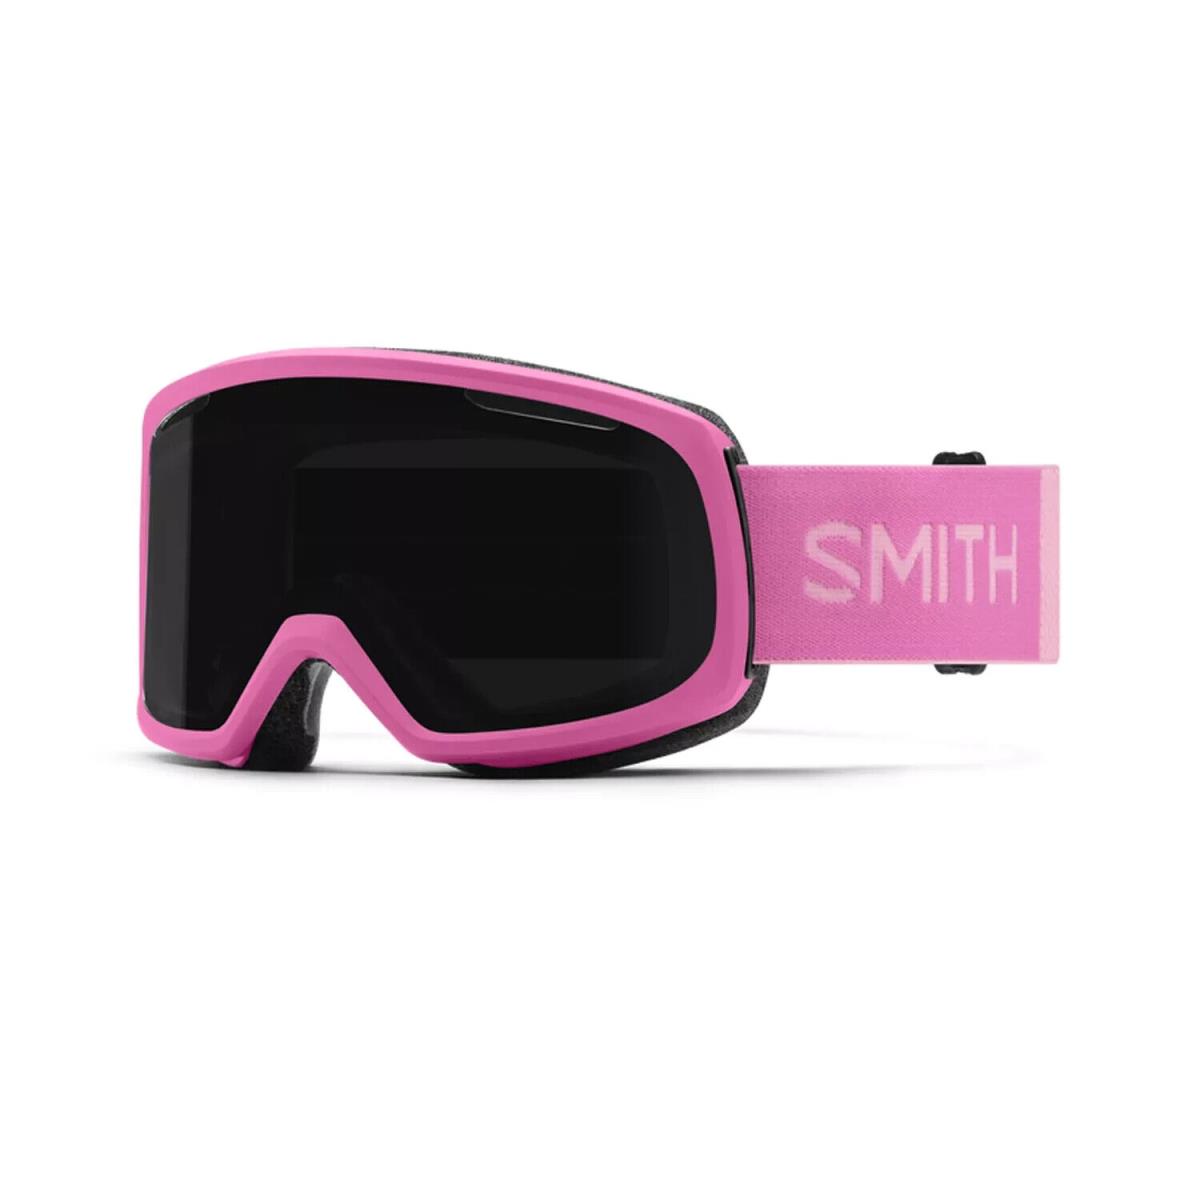 Smith Riot Snow Goggles Ski Snowboard Chromapop Anti Fog Flamingo Pink